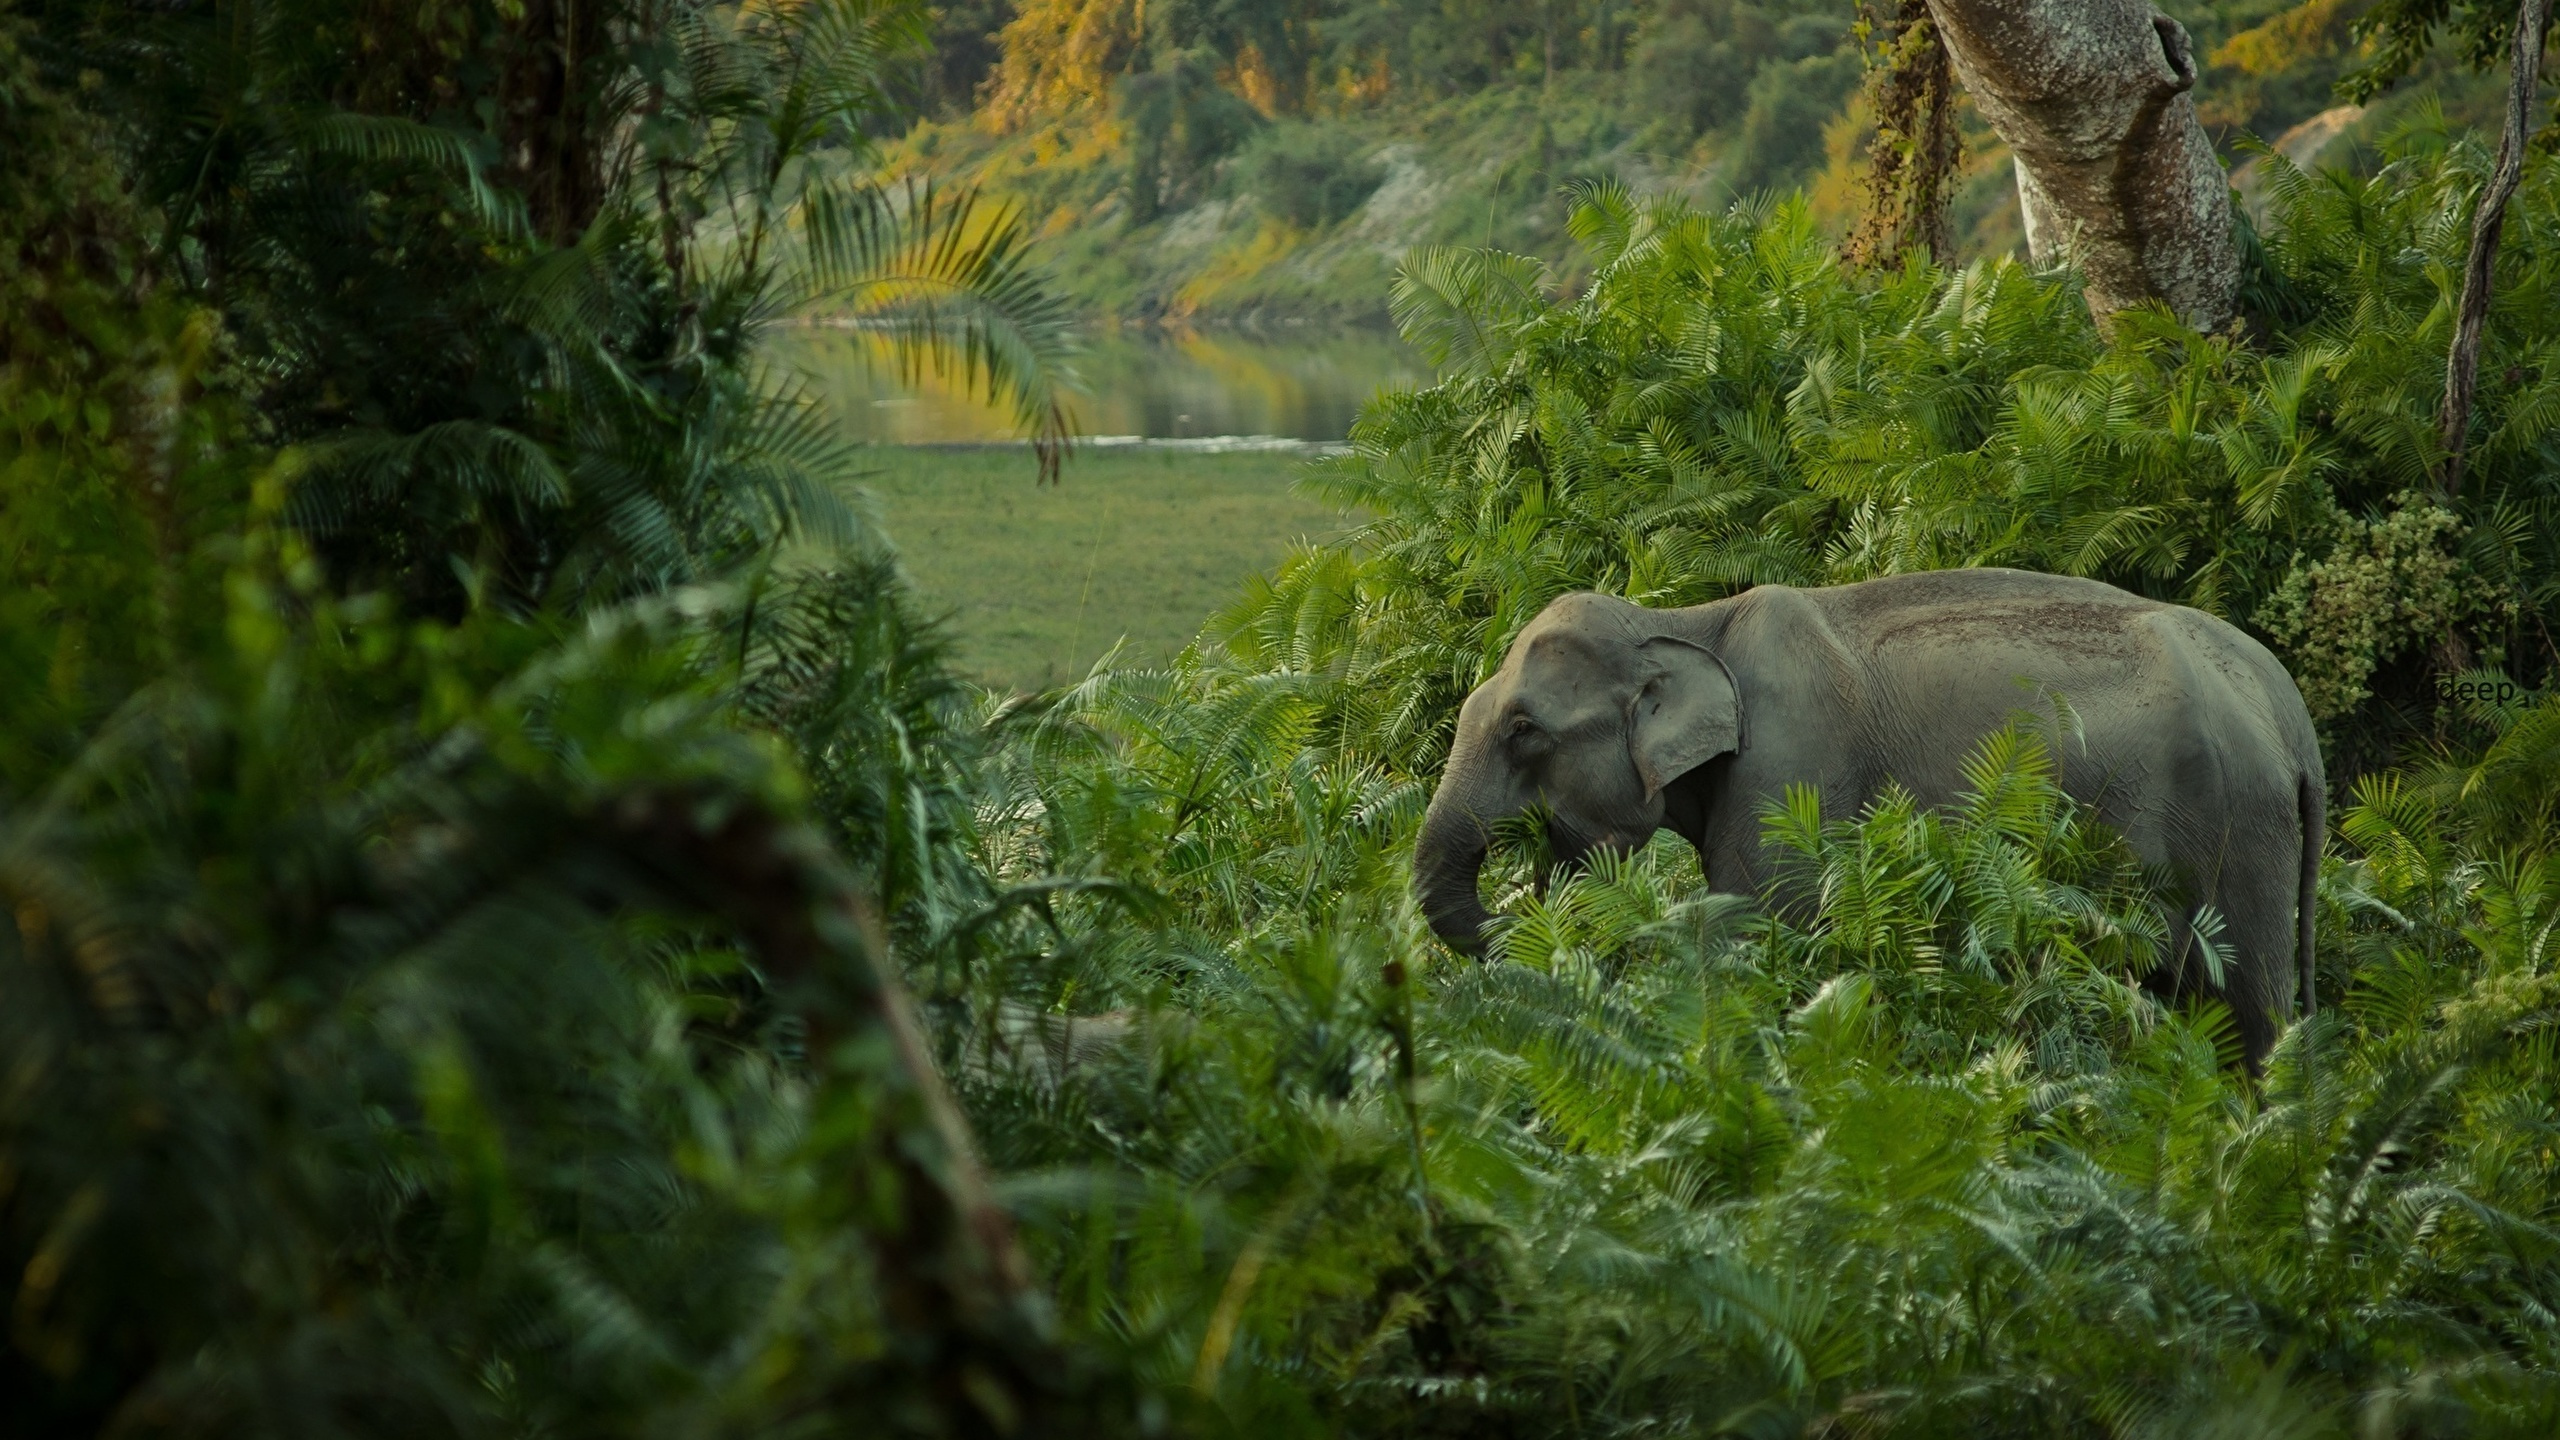 非洲森林中的大象, 野生动物, 自然保护区, 丛林, 植被 壁纸 2560x1440 允许